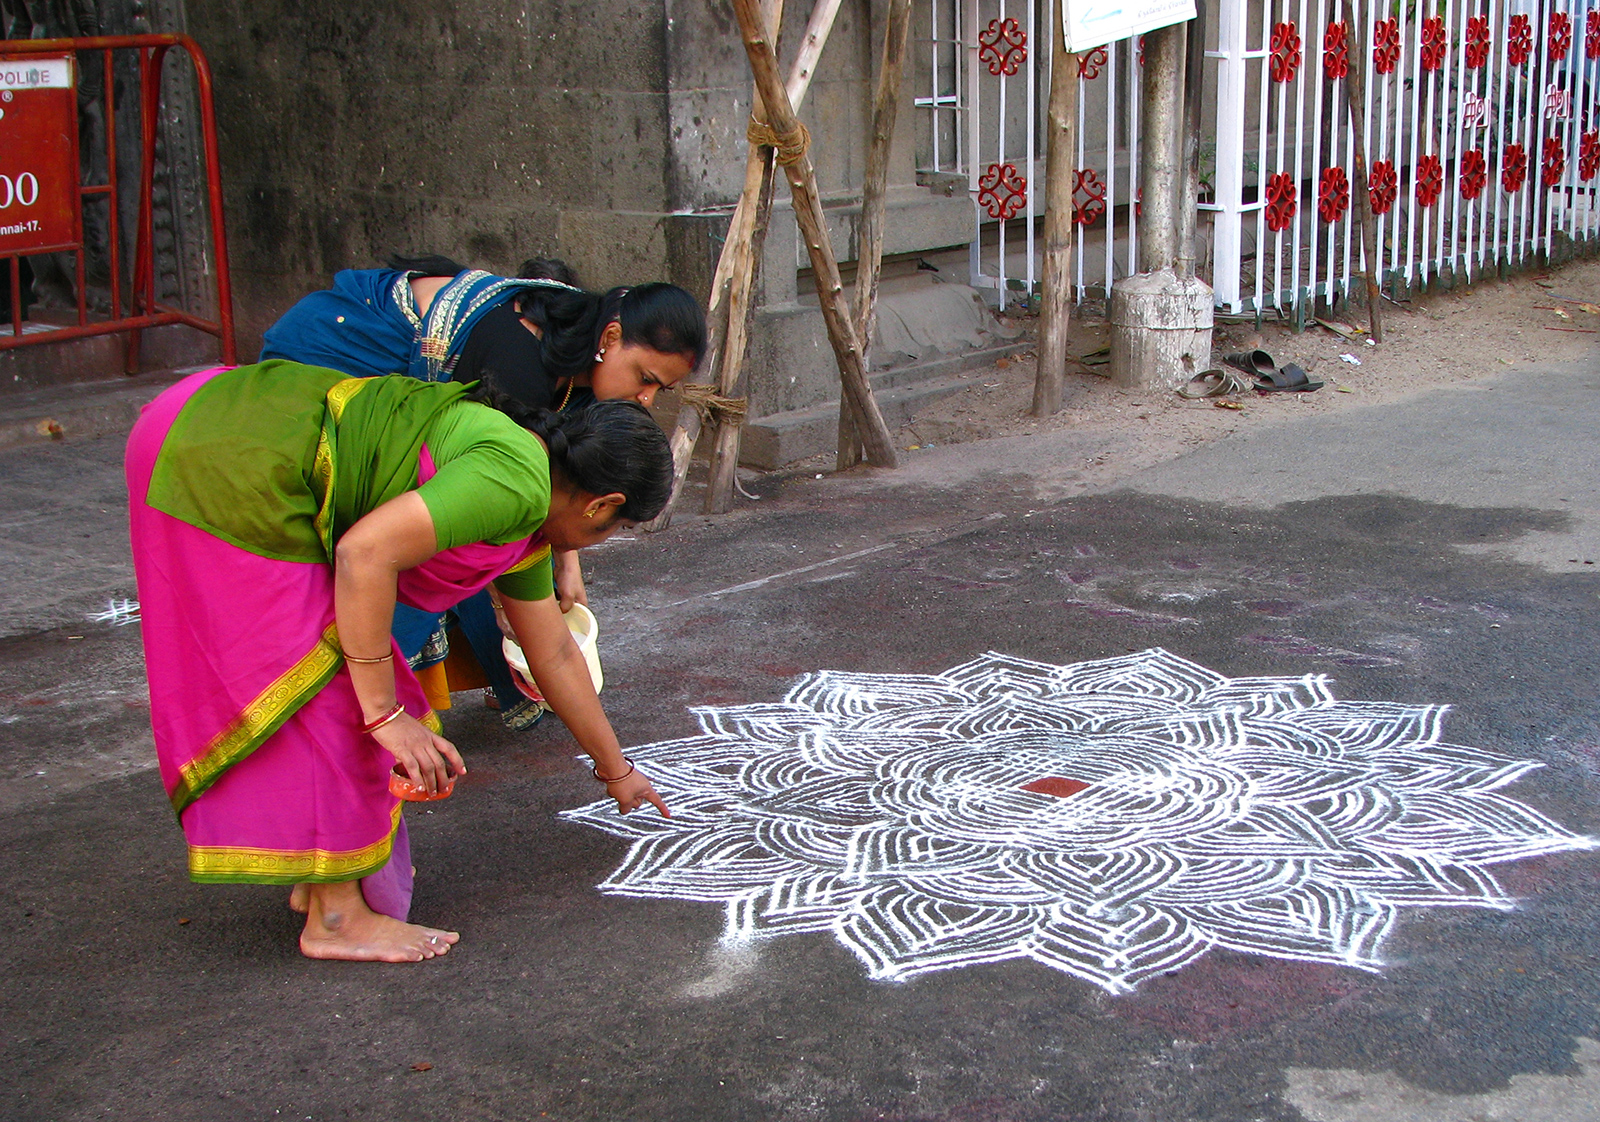 Tamil Nadu culture